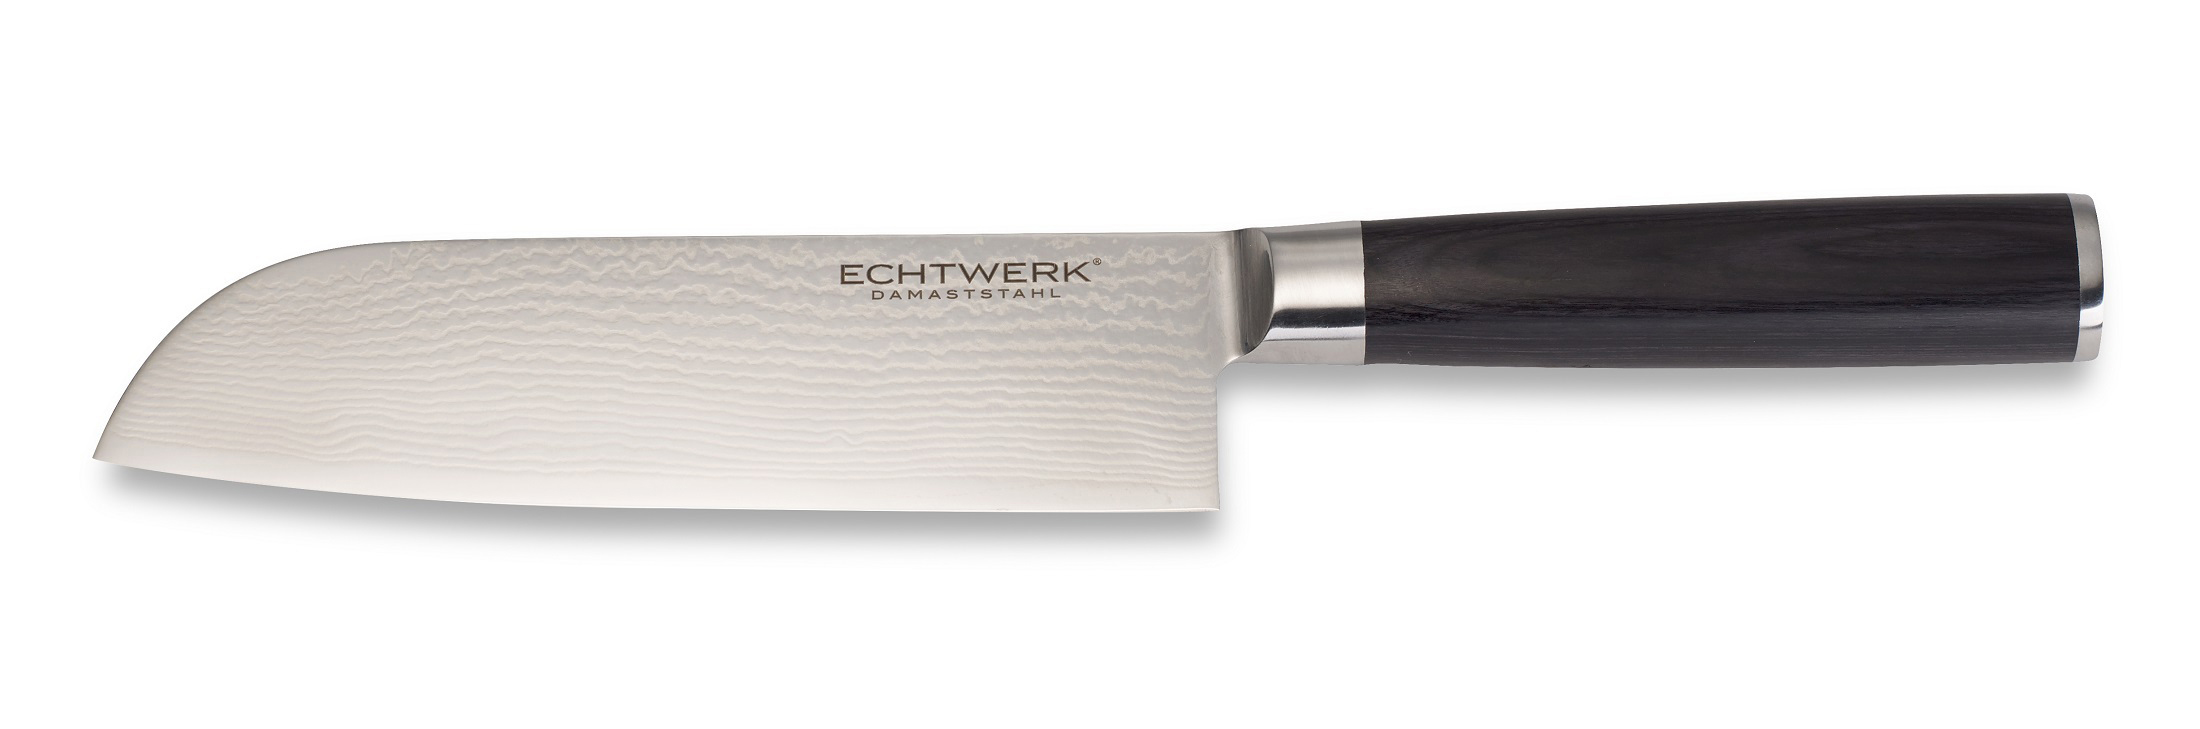 EW-DM-0360 Allzweckmesser ECHTWERK